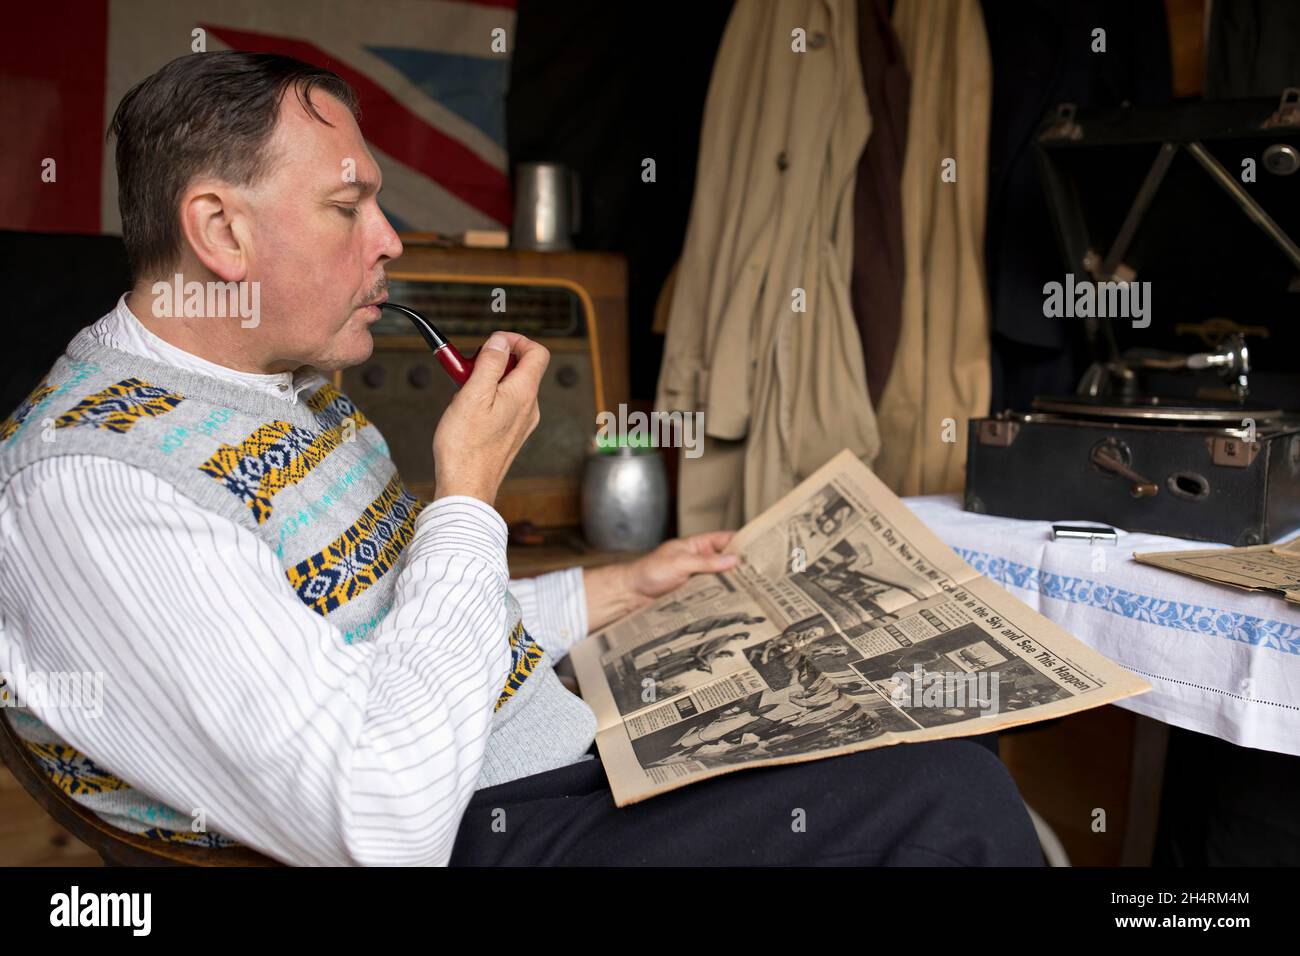 Royaume-Uni des années 1940 : l'homme fume la pipe, lisant le journal tout en listentant au disque gramophone. Banque D'Images